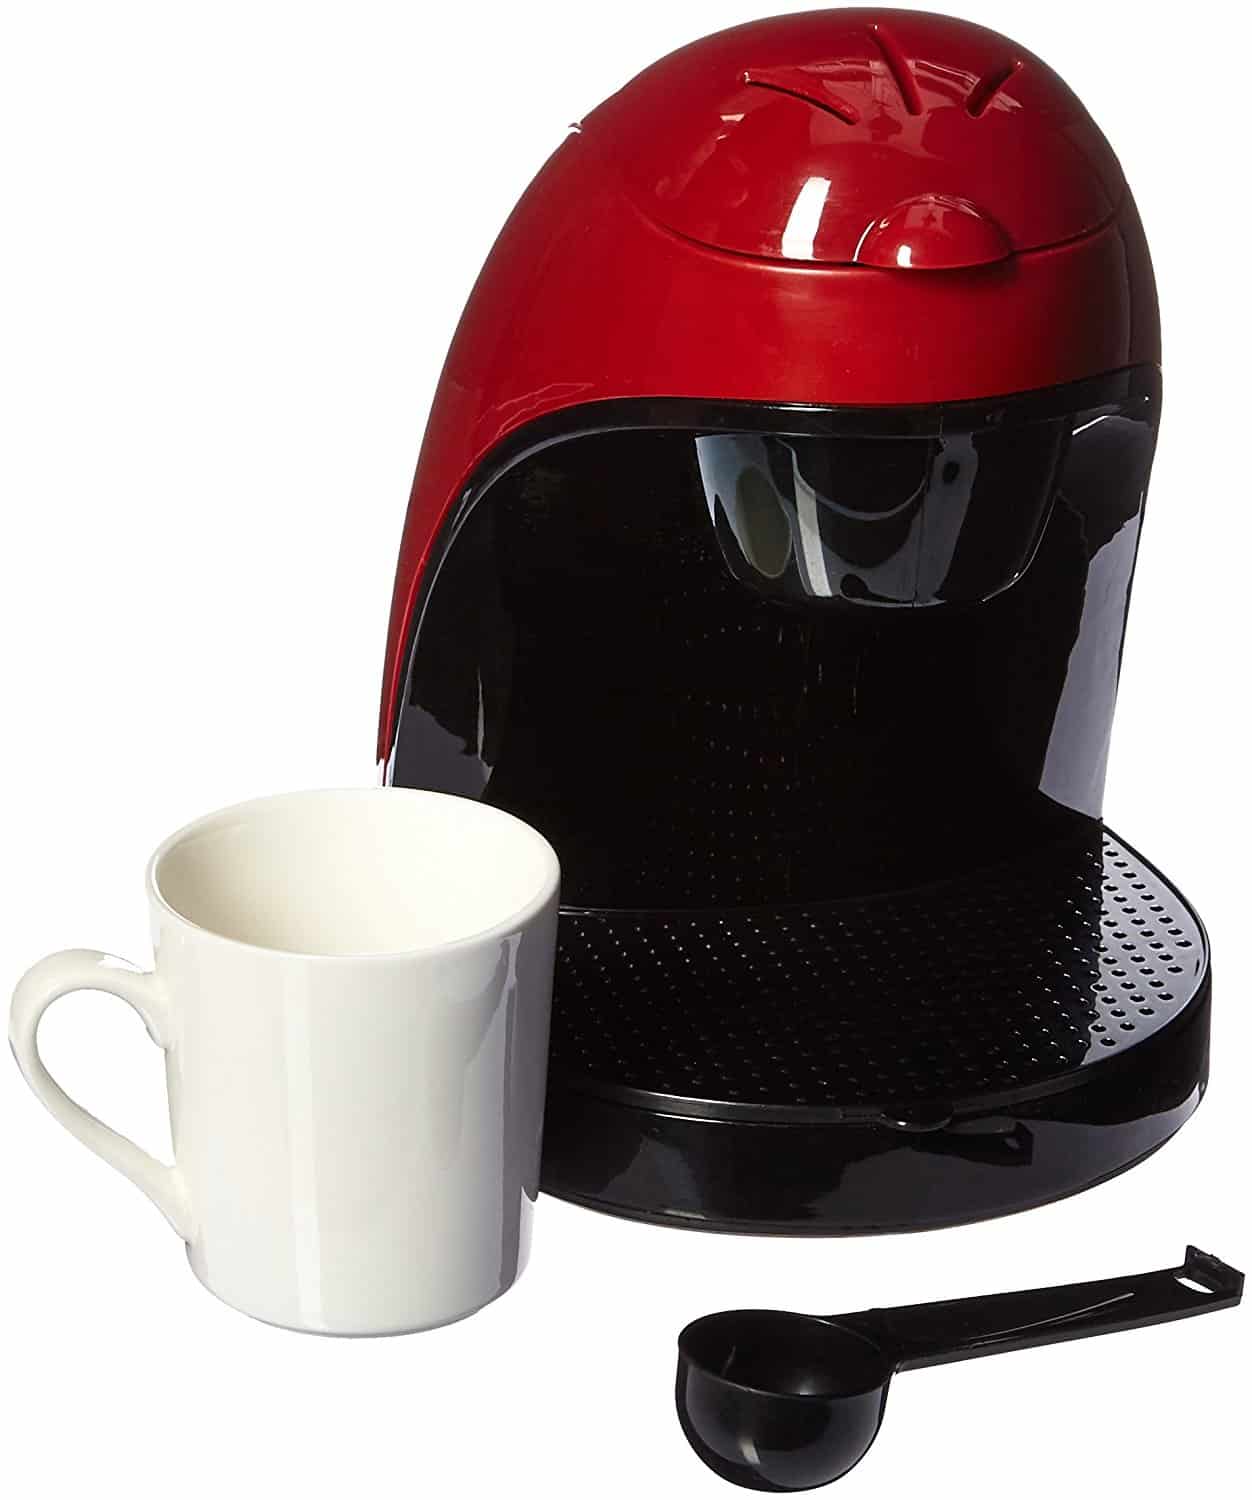 紧凑现代的黑色和红色单杯咖啡机由布伦特伍德